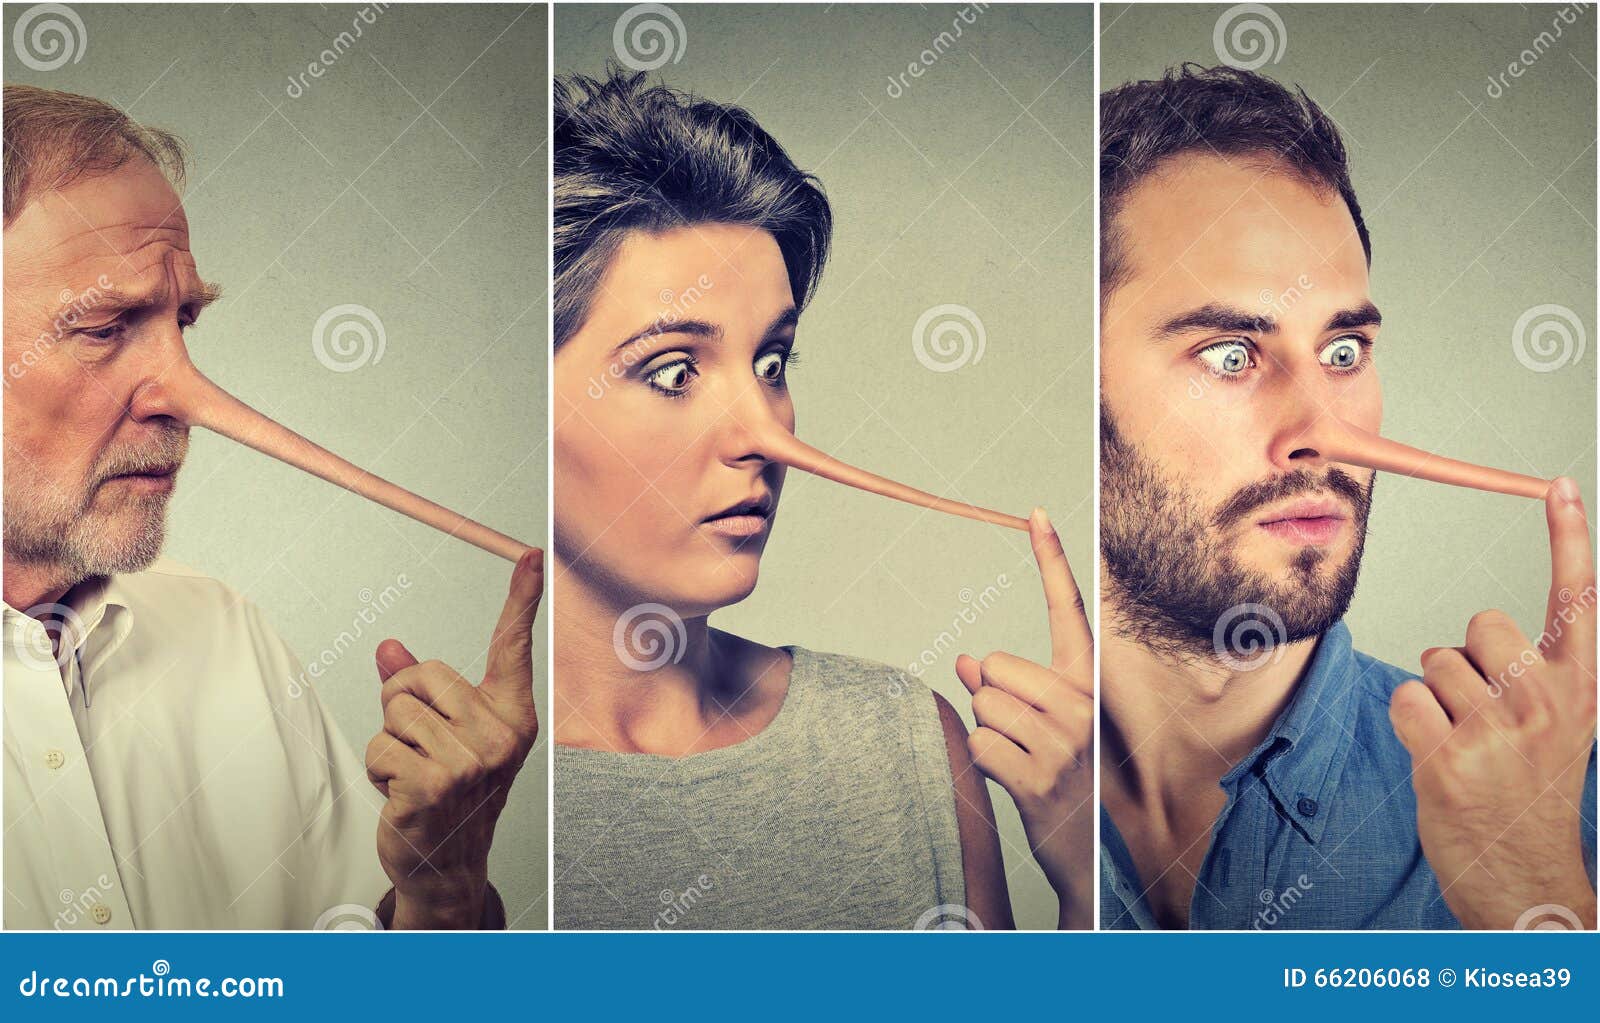 Люди С Длинным Носом Фото